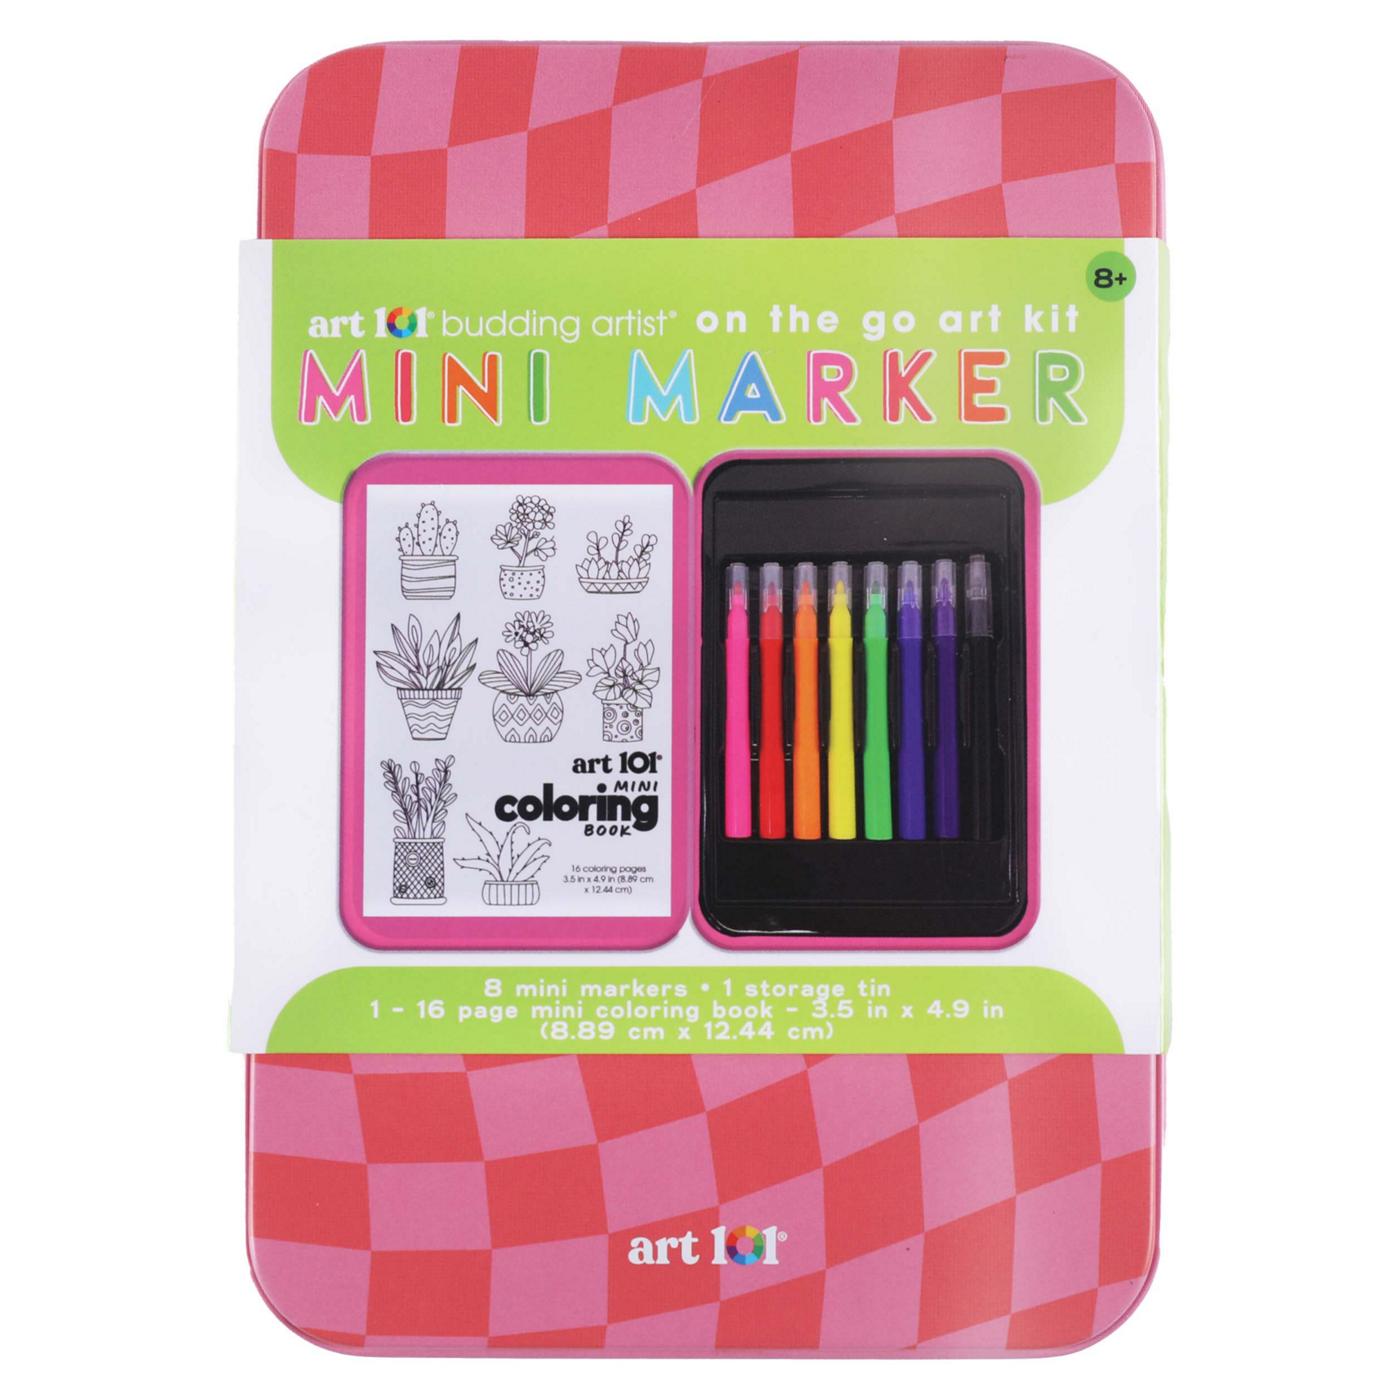 Art 101 Mini Marker On The Go Art Kit; image 1 of 6